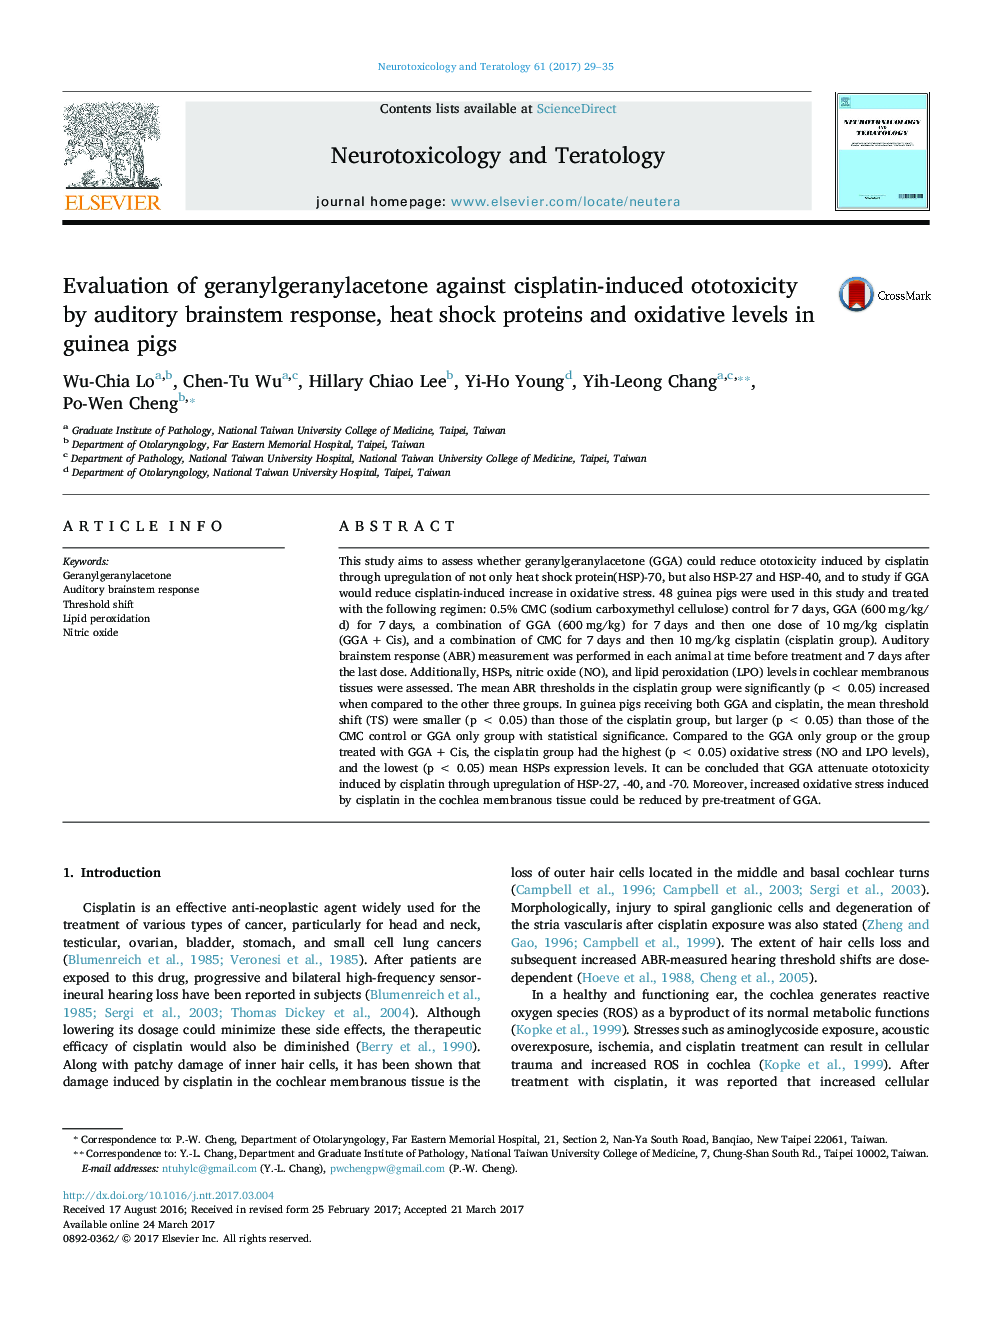 ارزیابی ژرانیل گرانیل آستون در برابر اتوتوکسیسیت ناشی از سیس پلاتین با پاسخ شنوایی مغز، پروتئین شوک حرارت و میزان اکسیداتیو در خوکچه های دریایی 